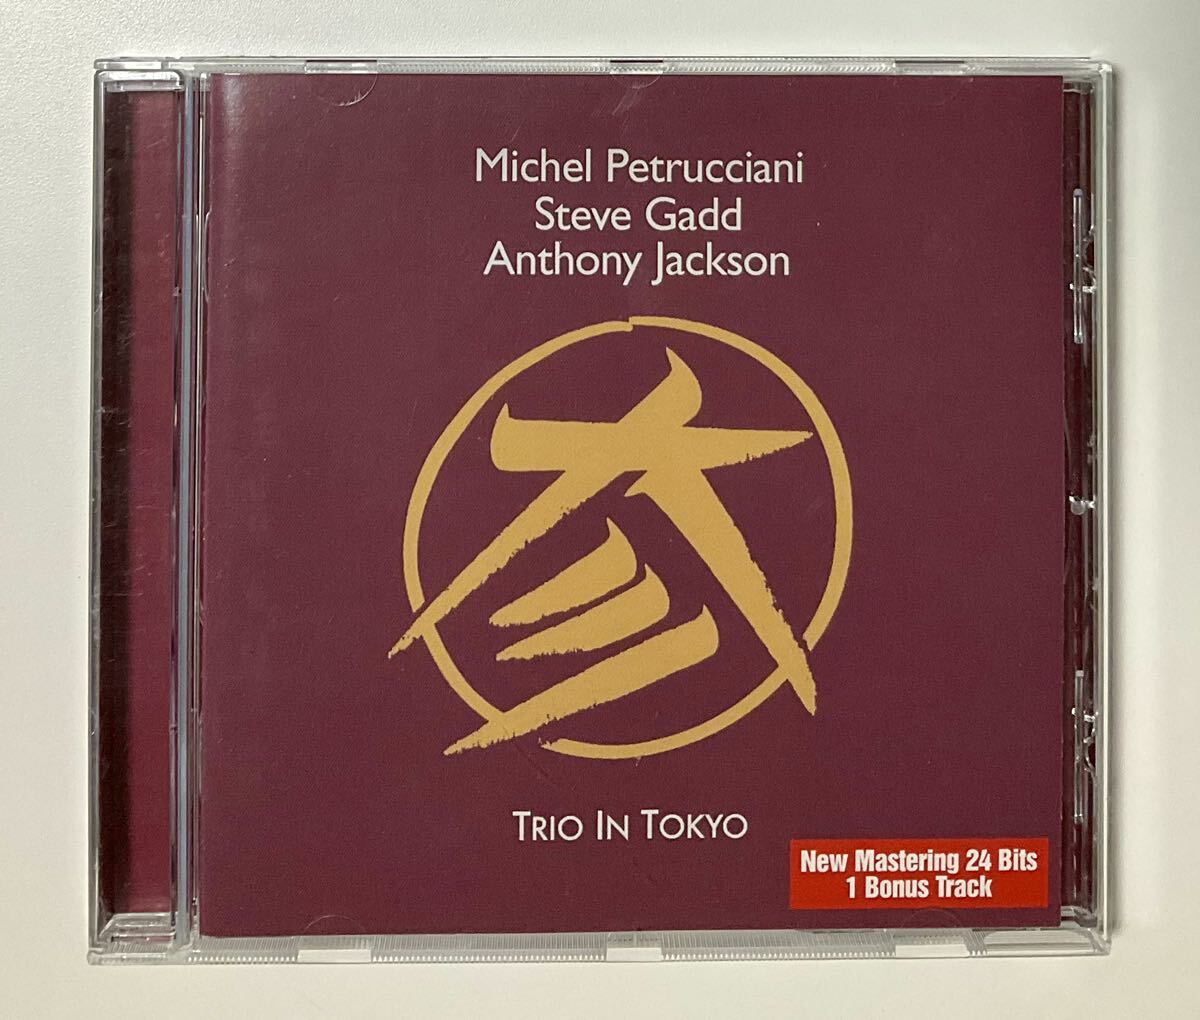 デジタルリマスター盤CD TRIO IN TOKYO ミシェル・ペトルチアーニ ジャズ 洋楽 Michel Petrucciani Steve Gadd Anthony Jacksonの画像1